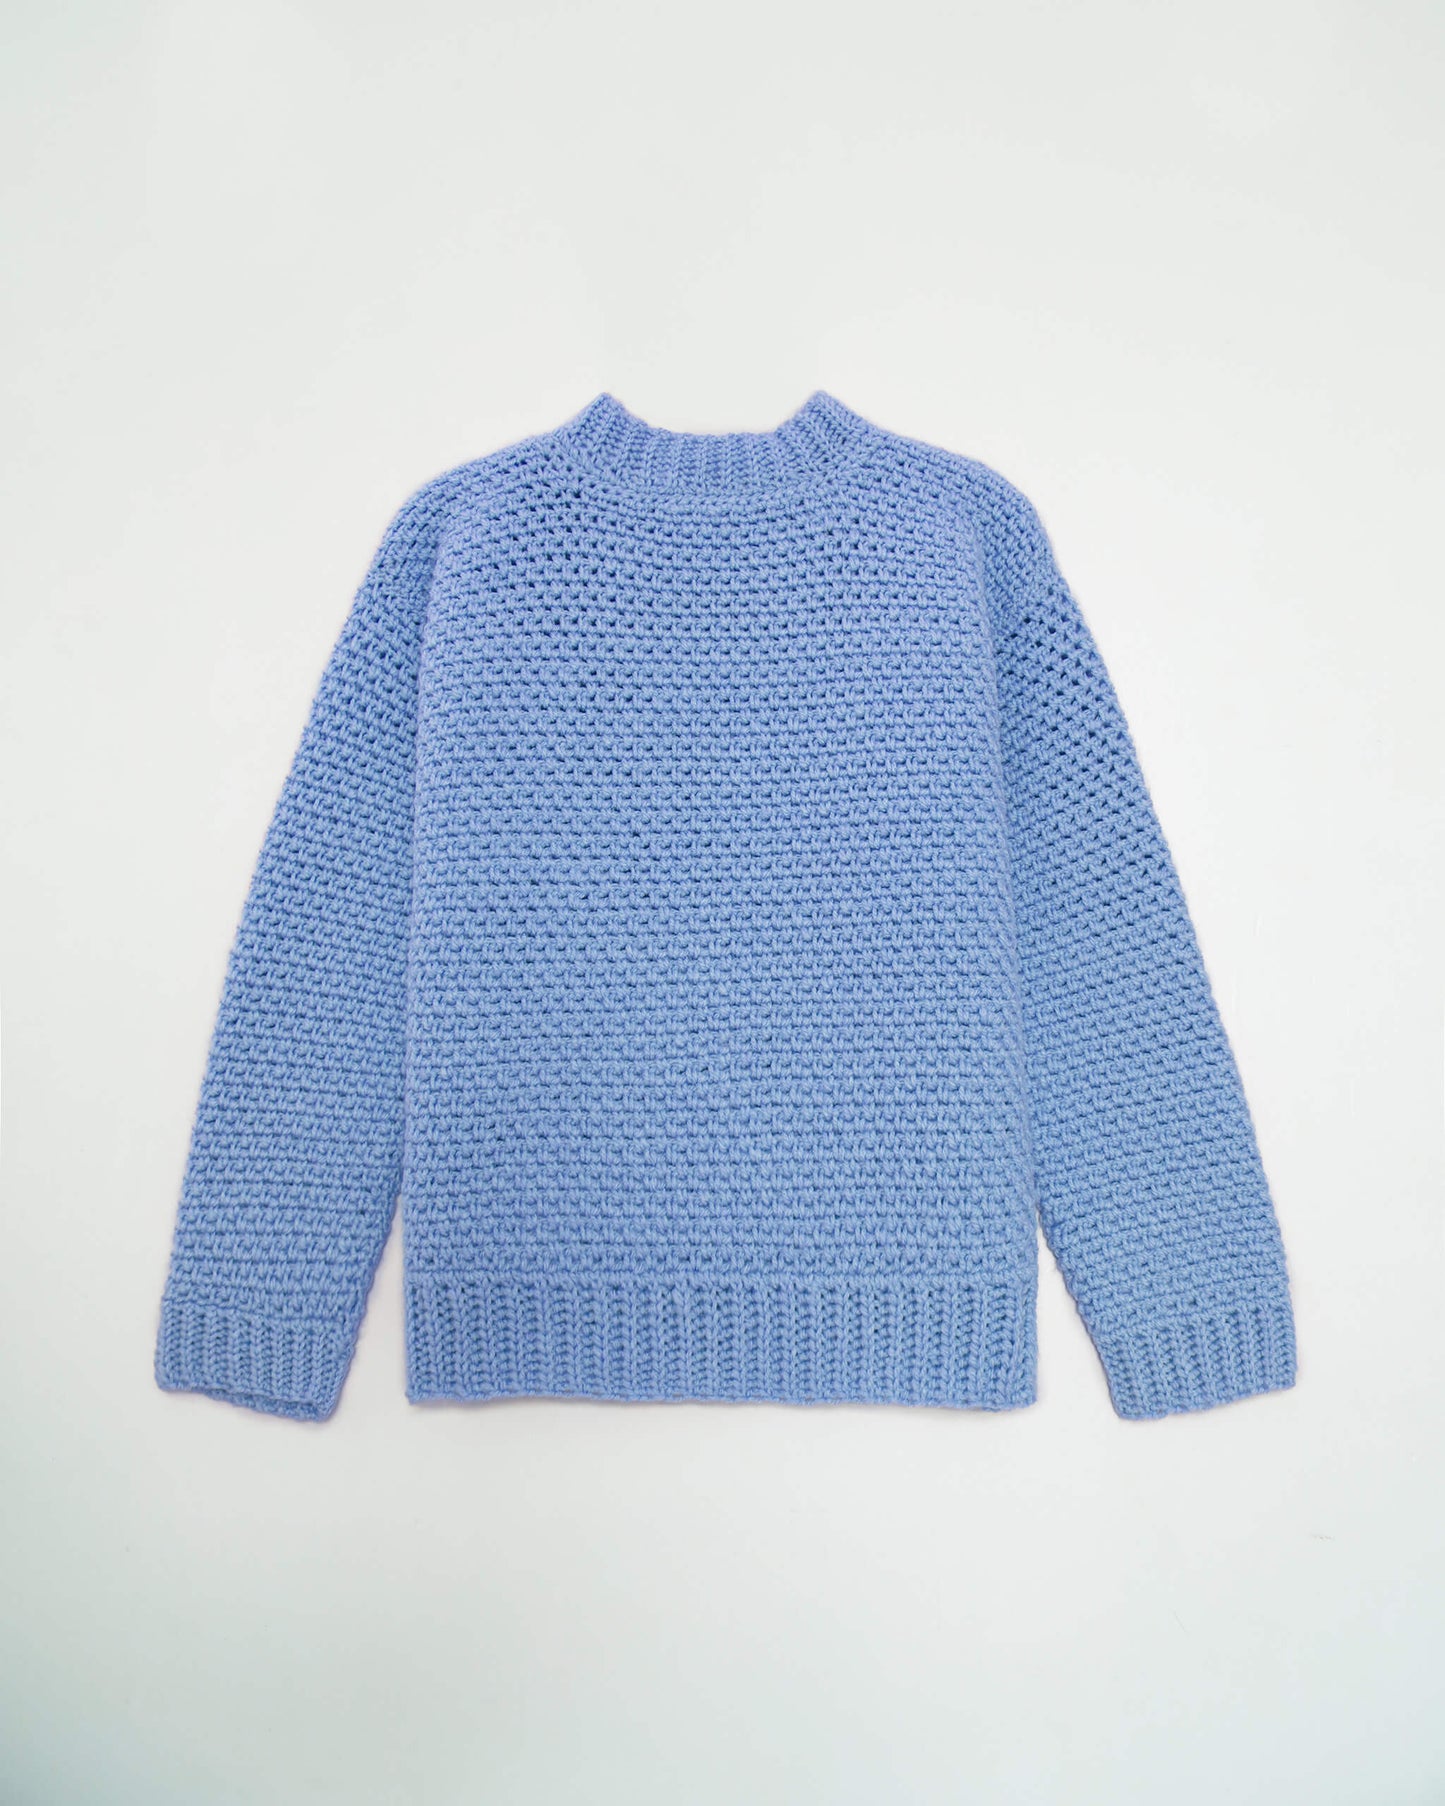 Kids' Sweater No.12 | Easy crochet pattern